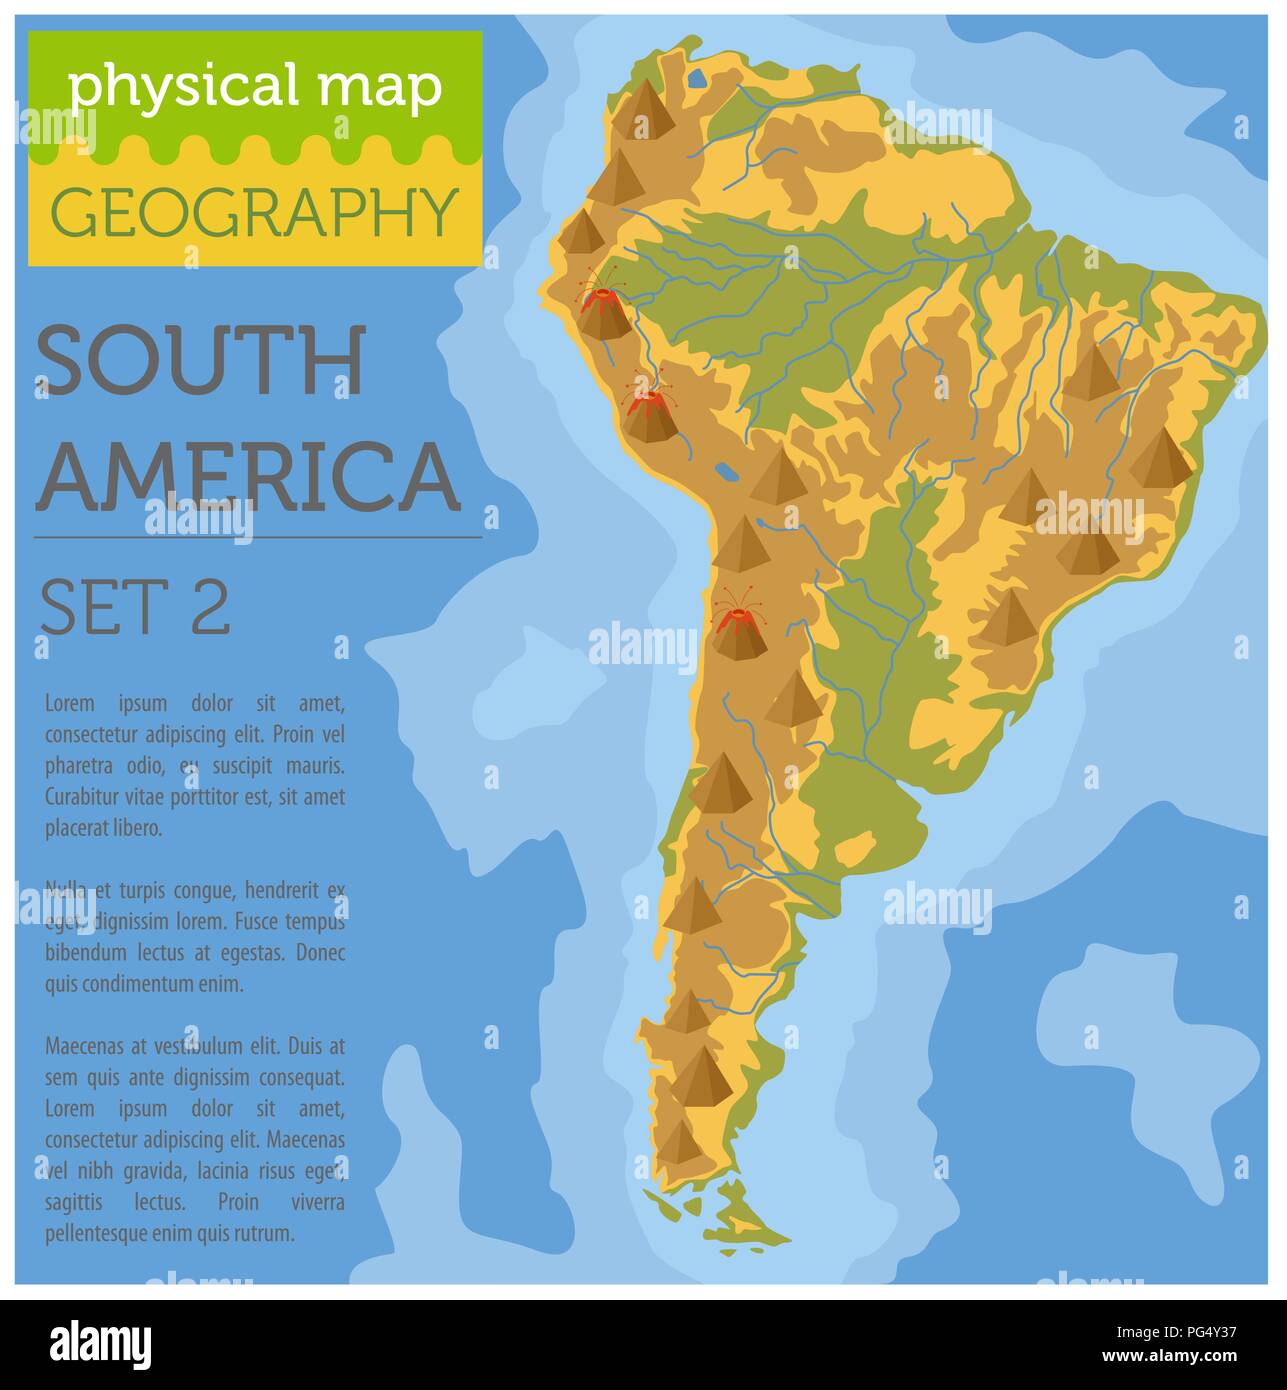 Südamerika physische Karte Elemente. Ihre eigene Geographie info Graphische Sammlung aufzubauen. Vector Illustration Stock Vektor